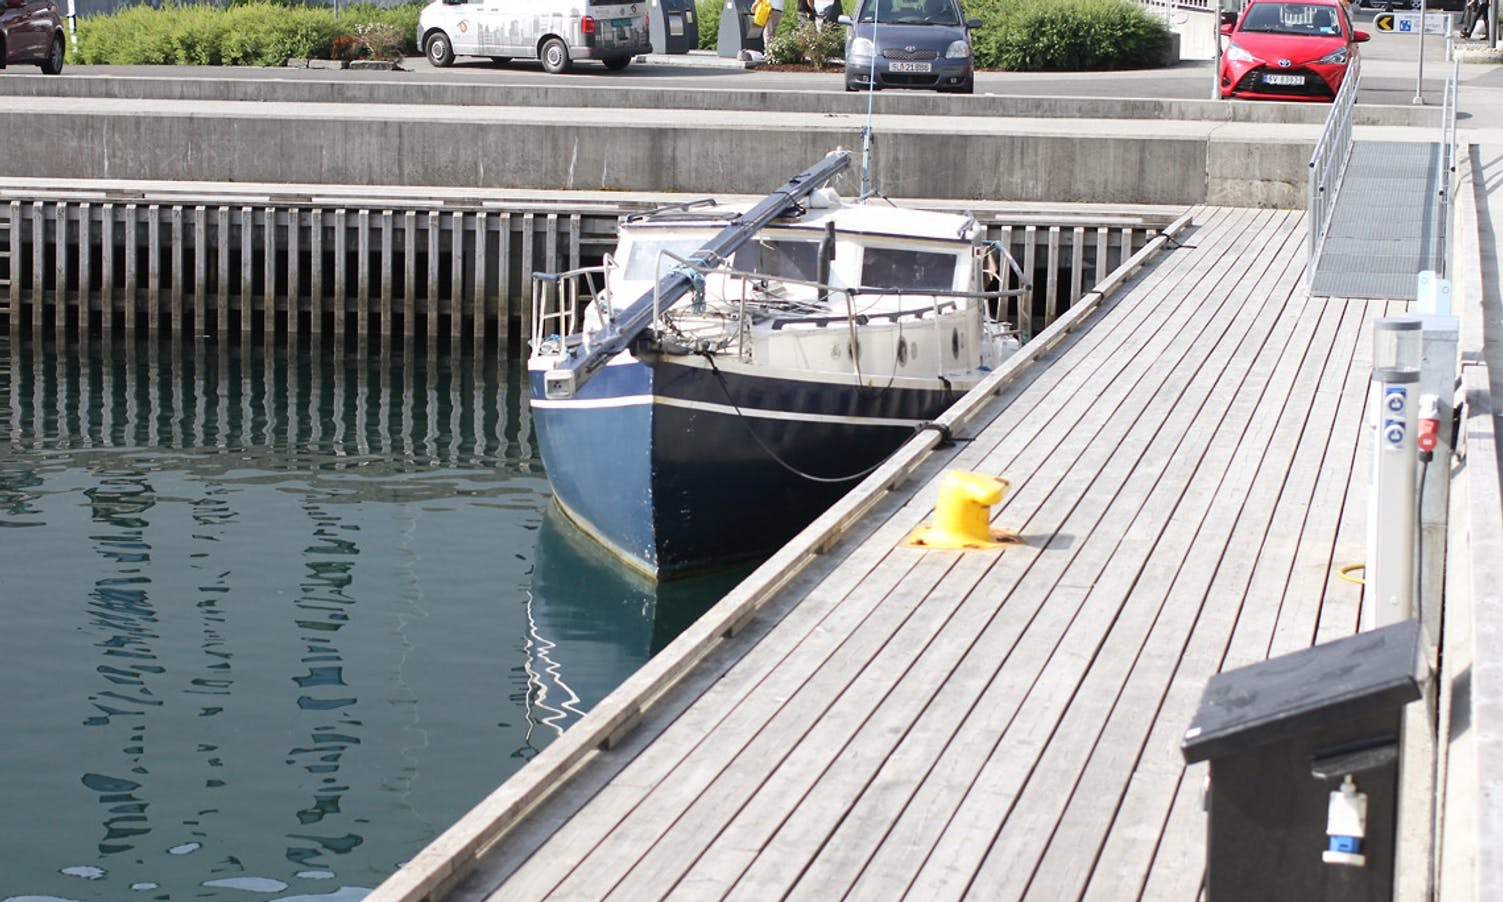 Denne båten i Os hamn har kommunen avtalt med eigar at skal fjernast, men førebels har det ikkje skjedd (foto: AH)